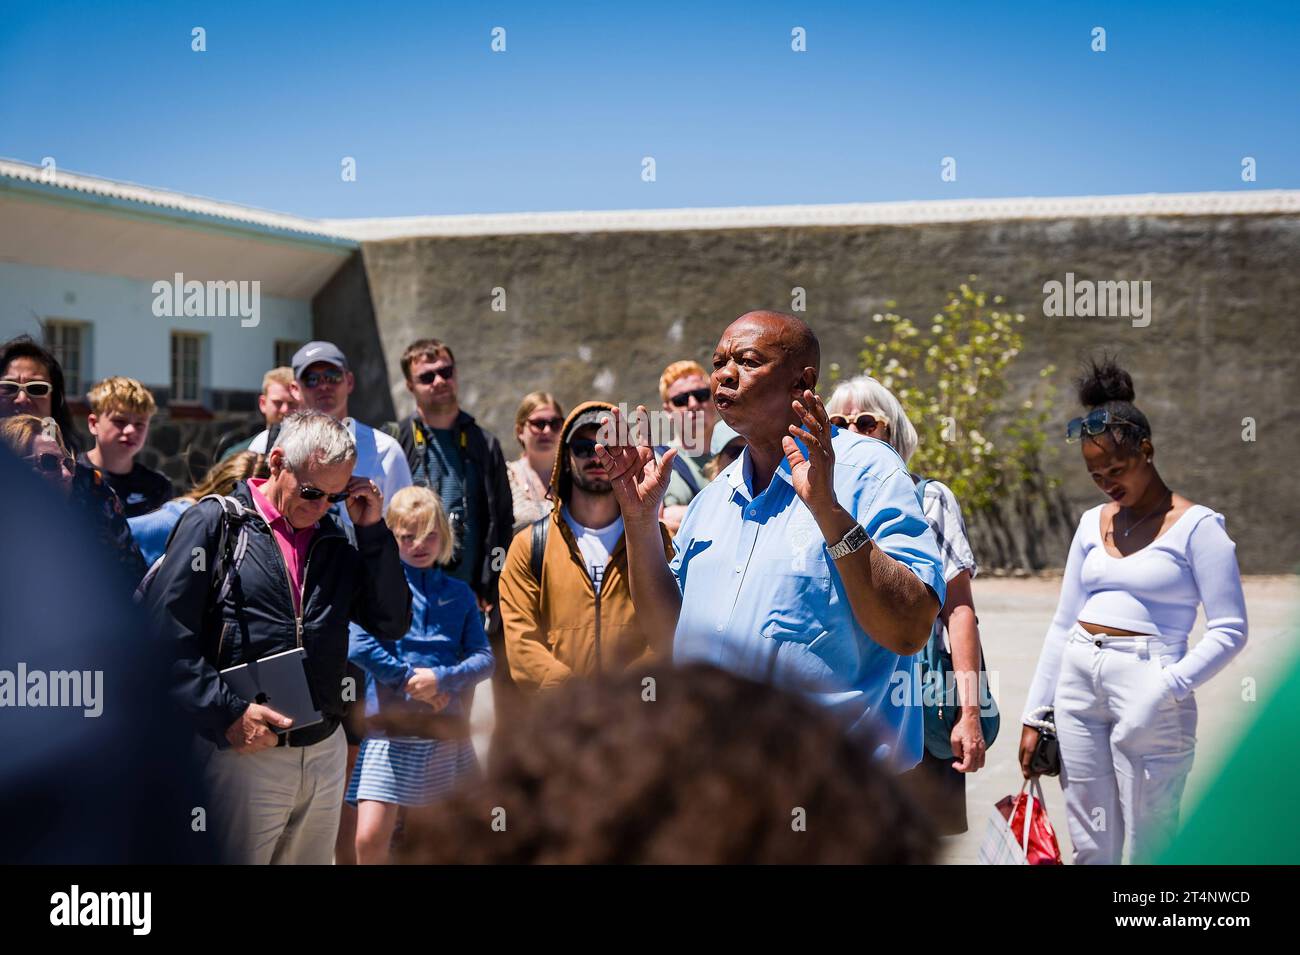 29.10.2023, xovx, Politik, Reise. Robben Island - Gefängnisinsel vor Kapstadt Führung einer Besuchergruppe durch Nelson Mandelas im Gefängnishof des Zellenblocks des Hochsicherheitstrakts auf der Gefängnisinsel Robben Island vor der Küste von Kapstadt, durch einen ehemaligen politischen Gefangenen, der der in diesem Gefängnis über viele Jahre inhaftiert wurde. In diesem Teil des Hochsicherheitstrakts verbrachte Nelson Mandela über 18 Jahre seiner Gefangenschaft in Einzelhaft. Der spätere Präsident Südafrikas Nelson Mandela verbrachte hier von 1964 bis 1982 seiner insgesamt 27-jährigen Gefangen Stock Photo